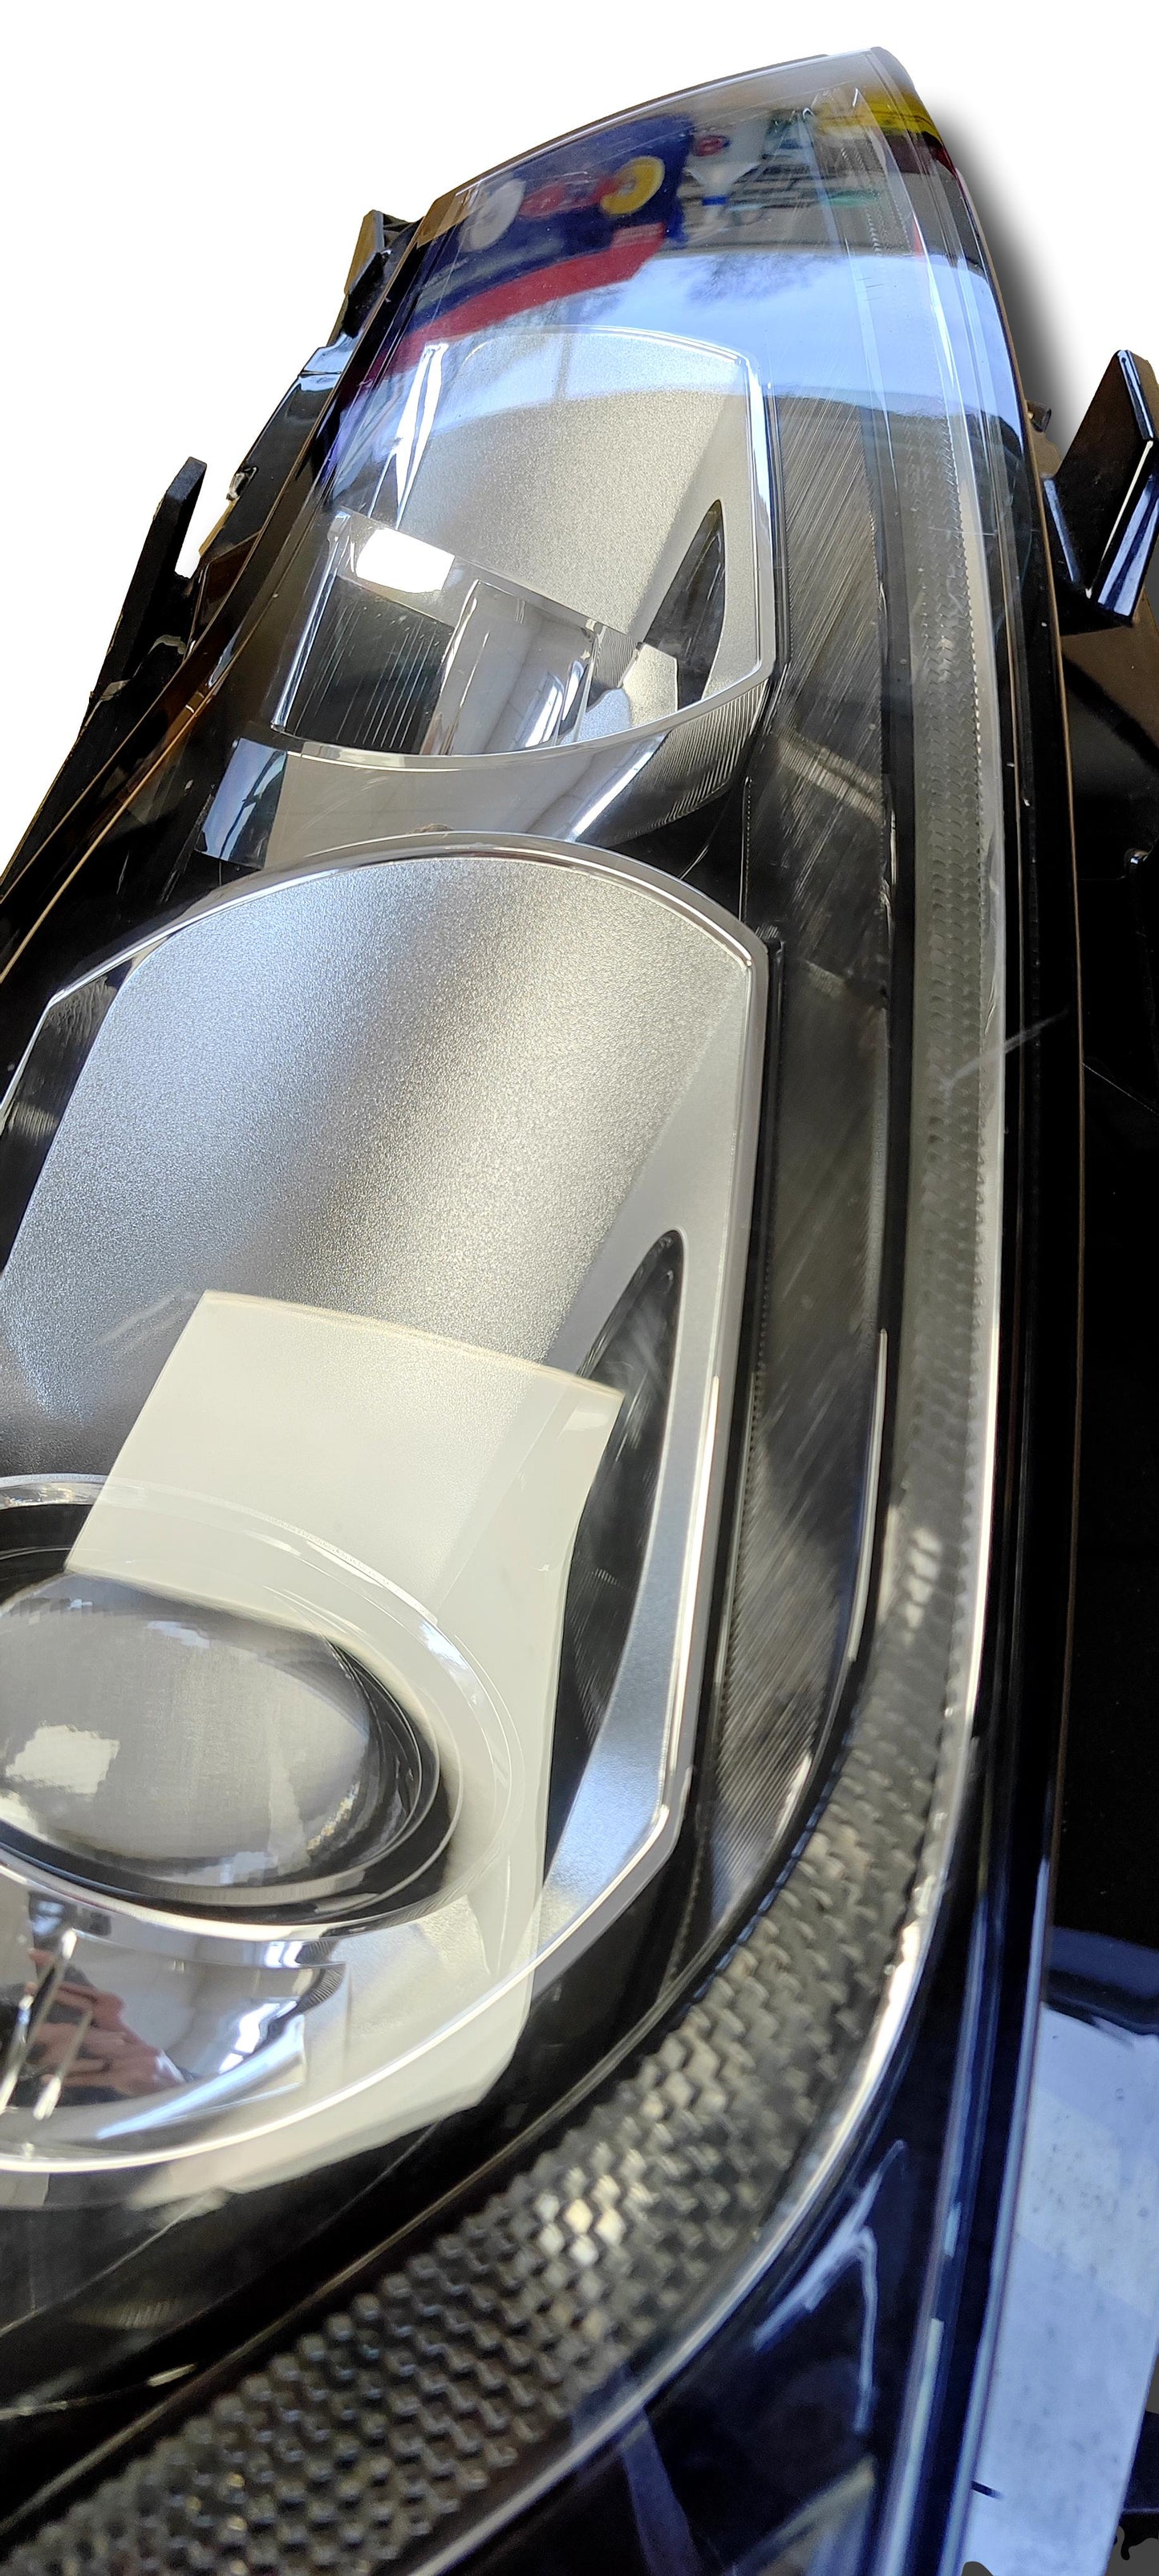 Jaguar XF Headlight Bi Xenon Sinistra 2016 su T2H19458 GX6313W030